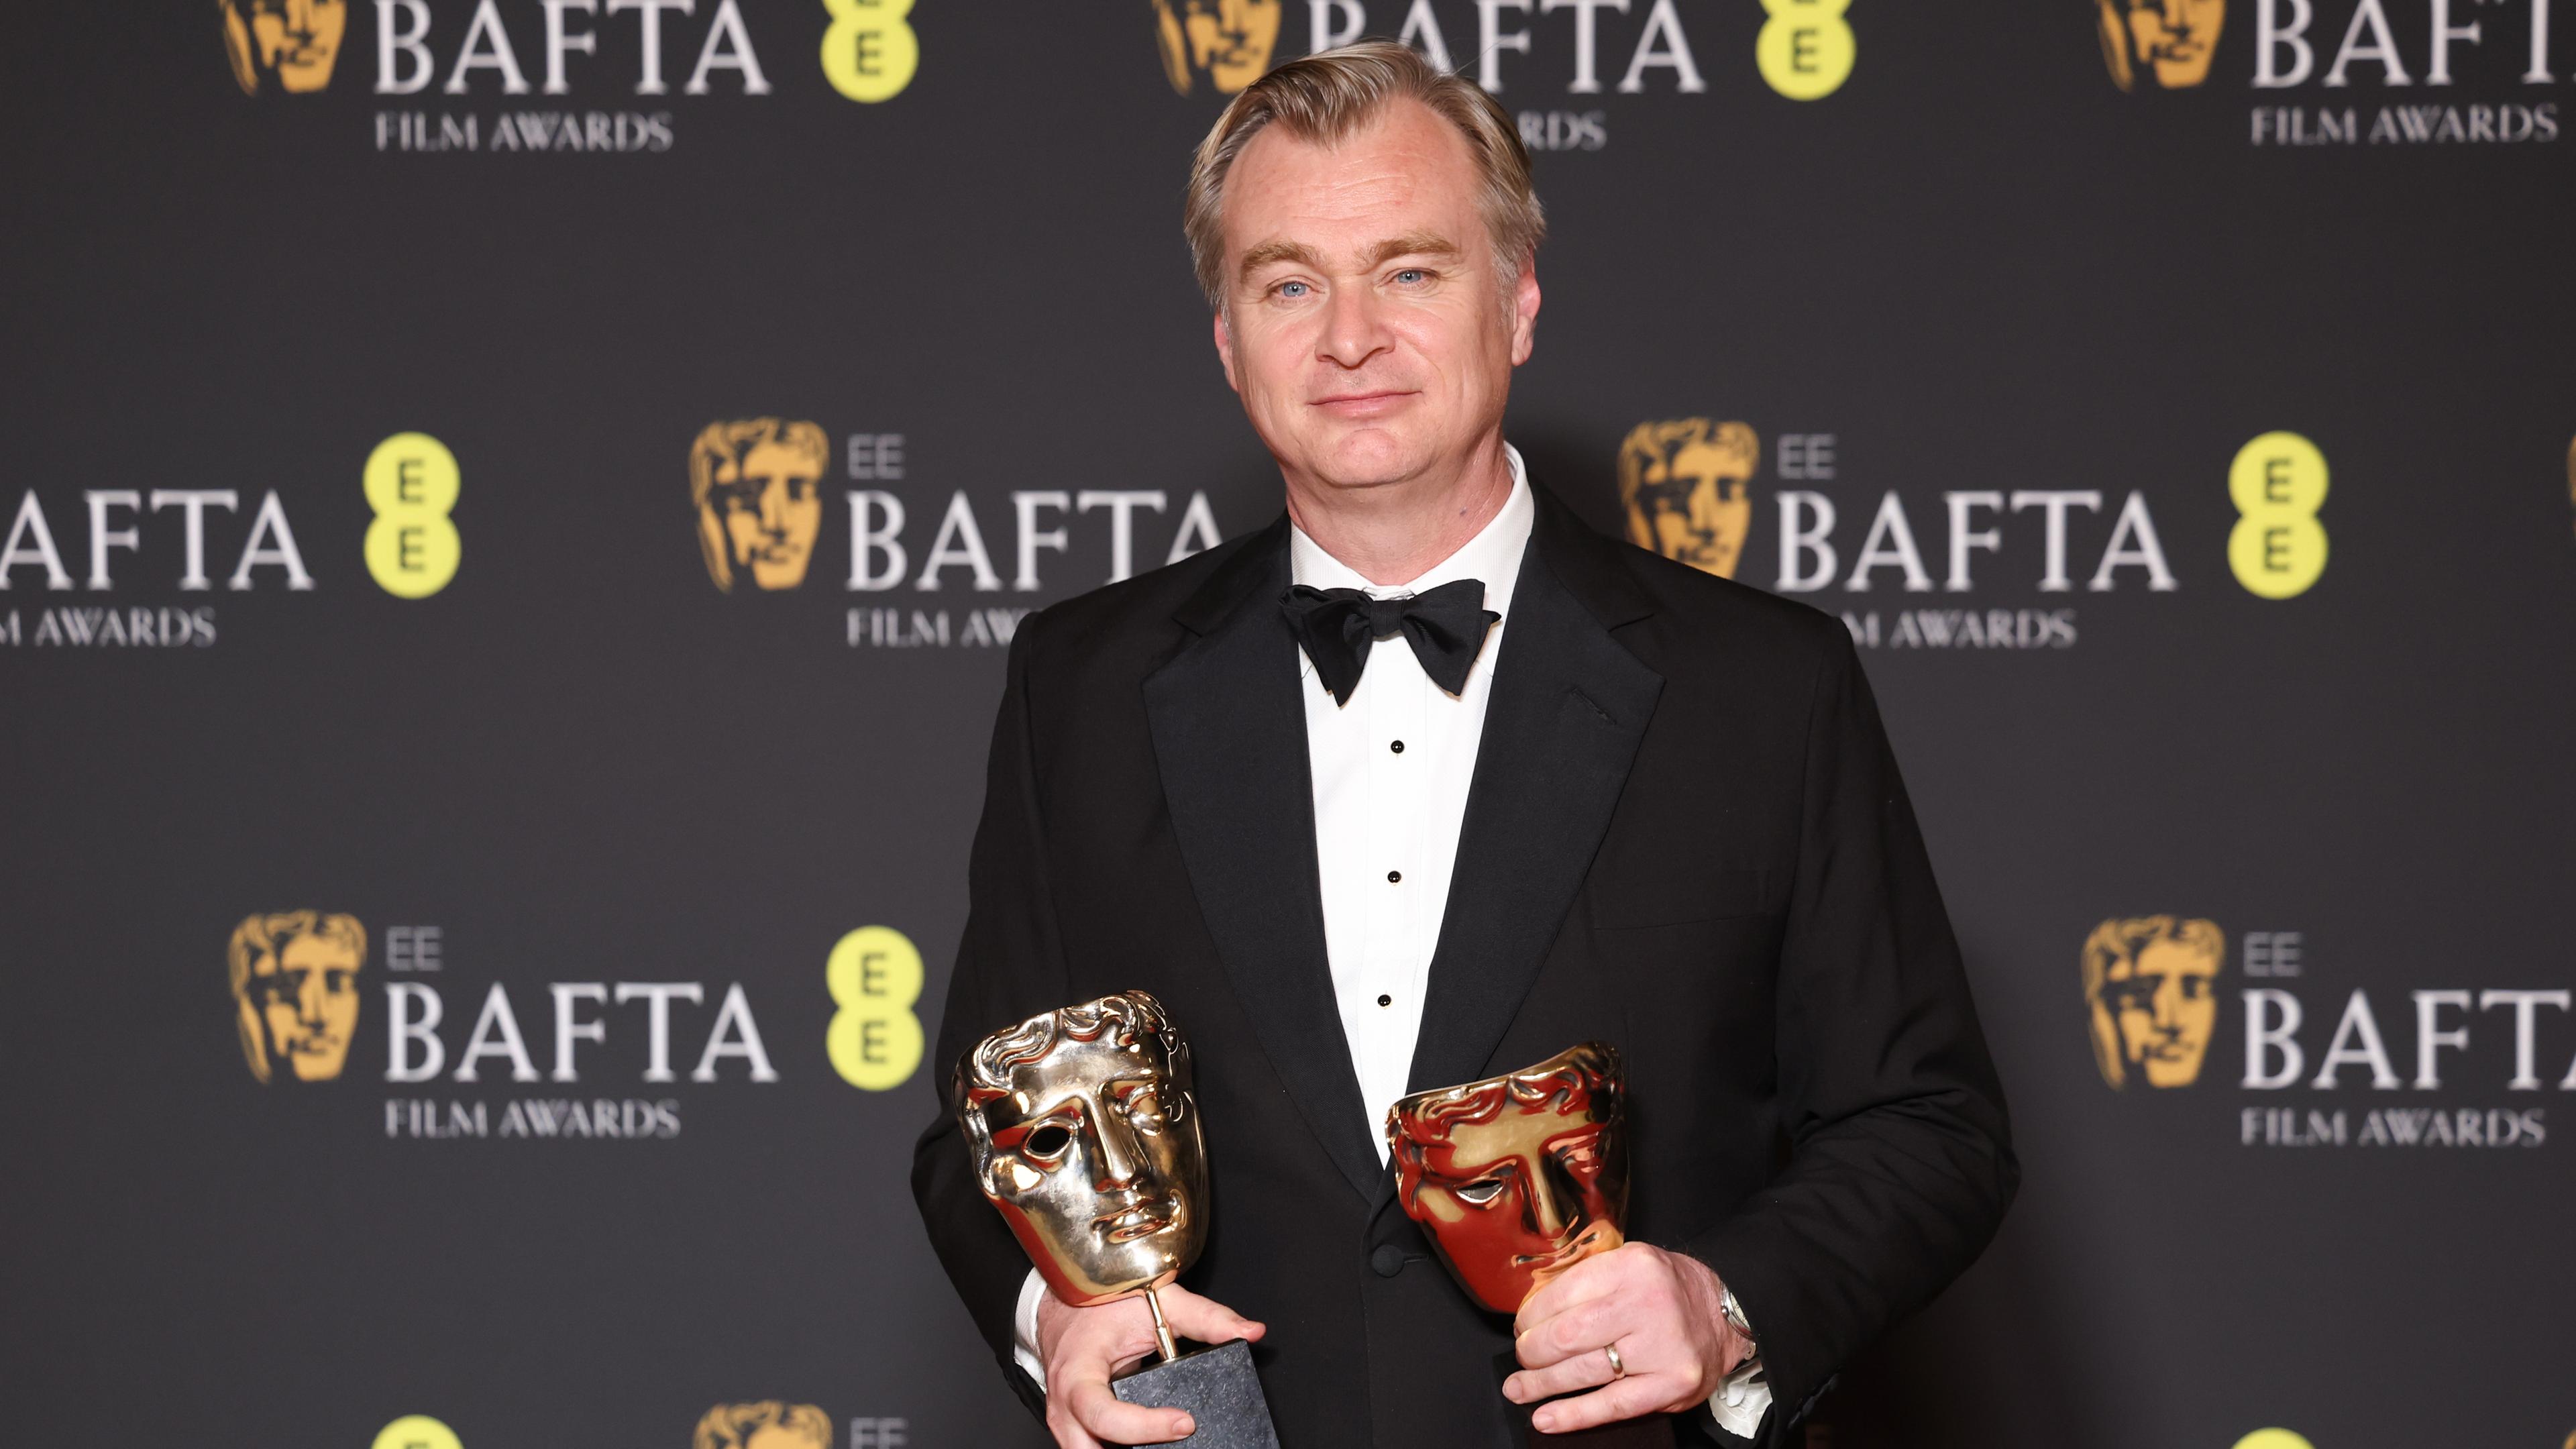 Regisseur Christopher Nolan bei der Verleihung der Bafta-Filmpreise.